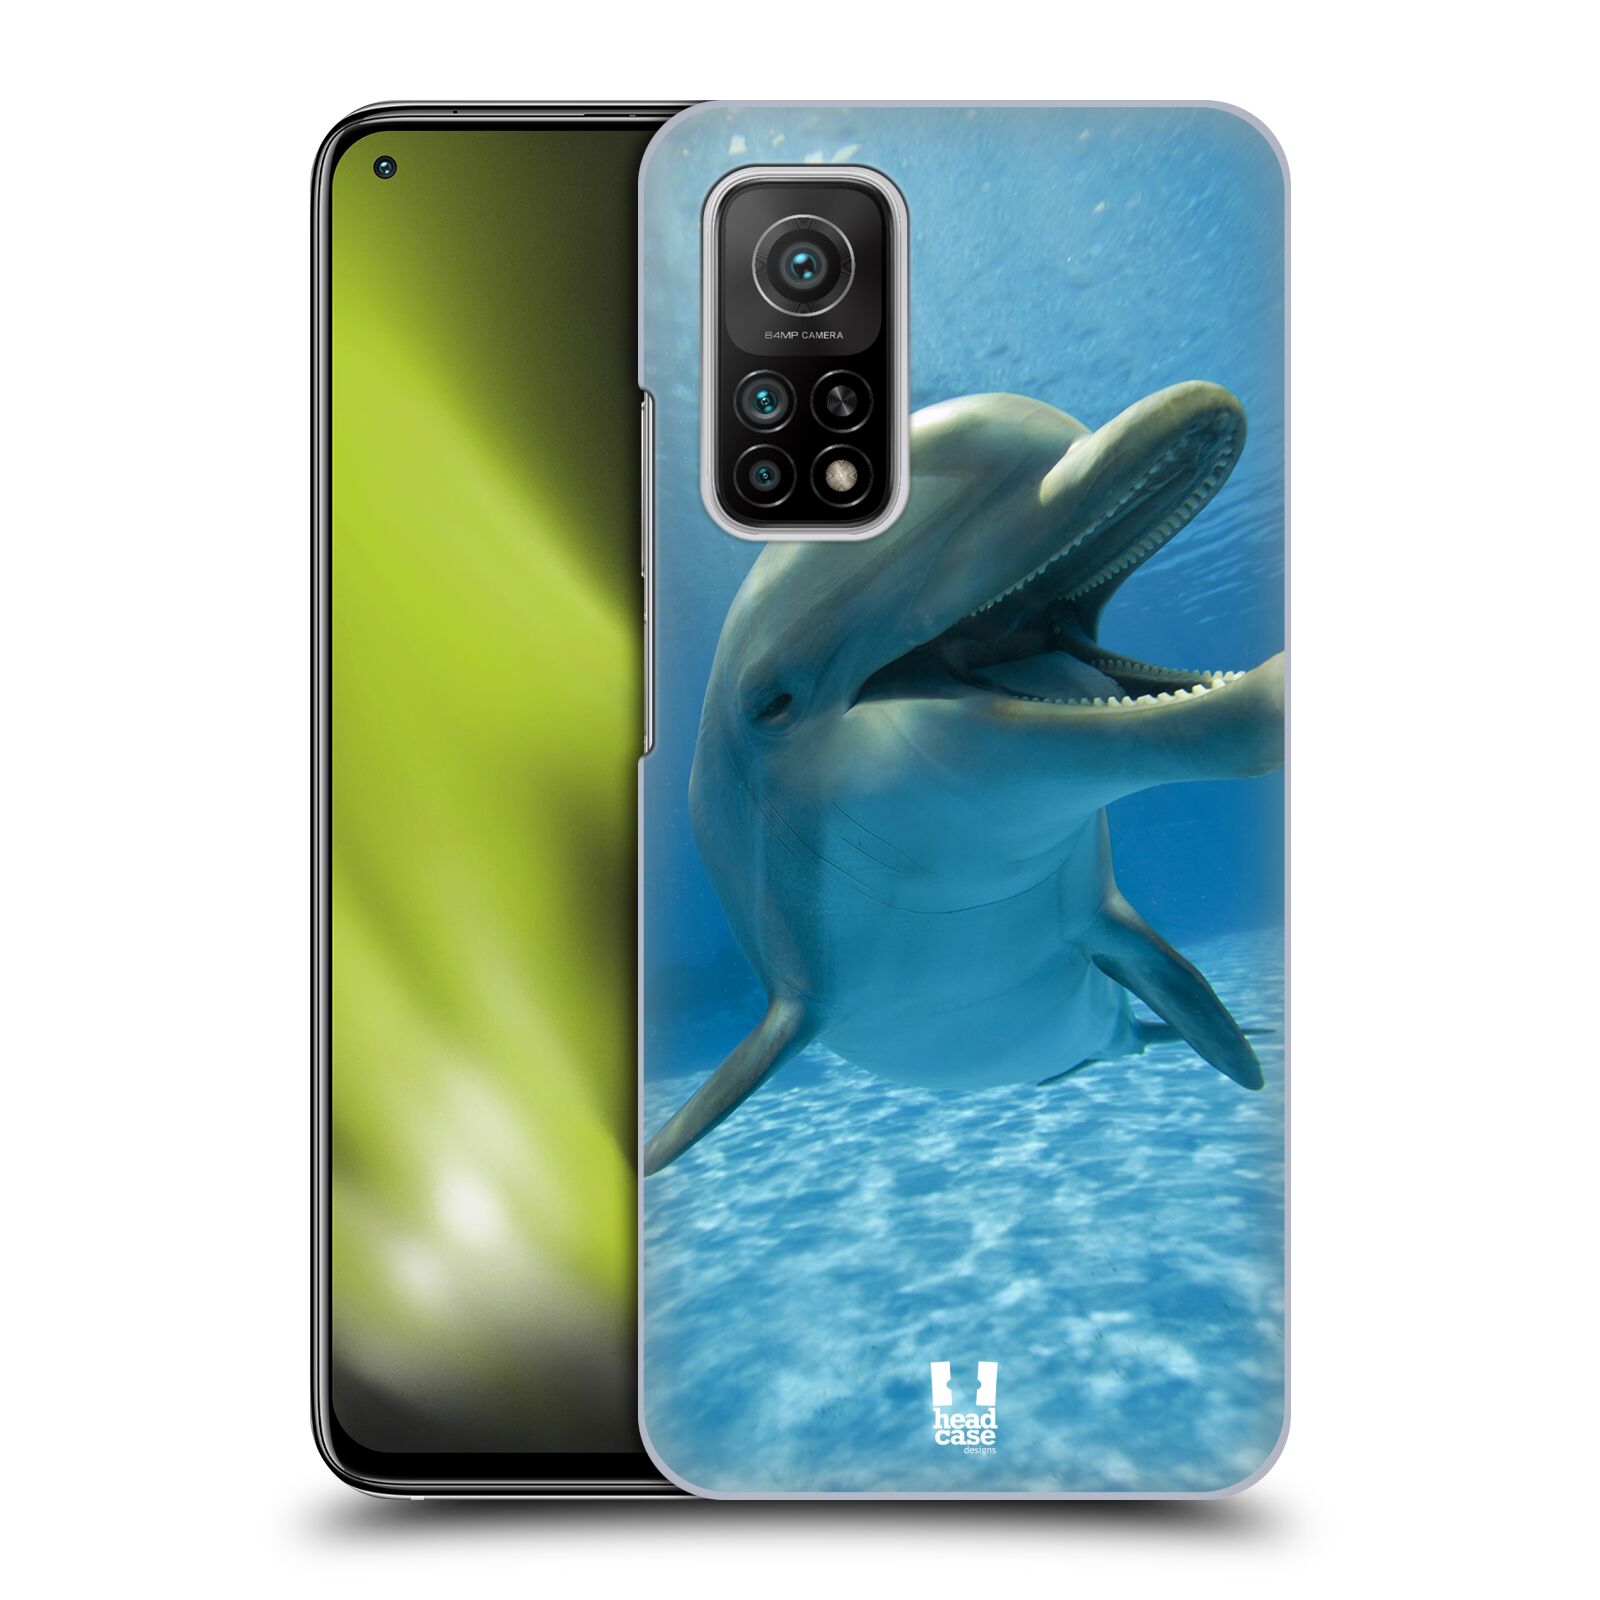 Zadní obal pro mobil Xiaomi Mi 10T / Mi 10T PRO - HEAD CASE - Svět zvířat delfín v moři